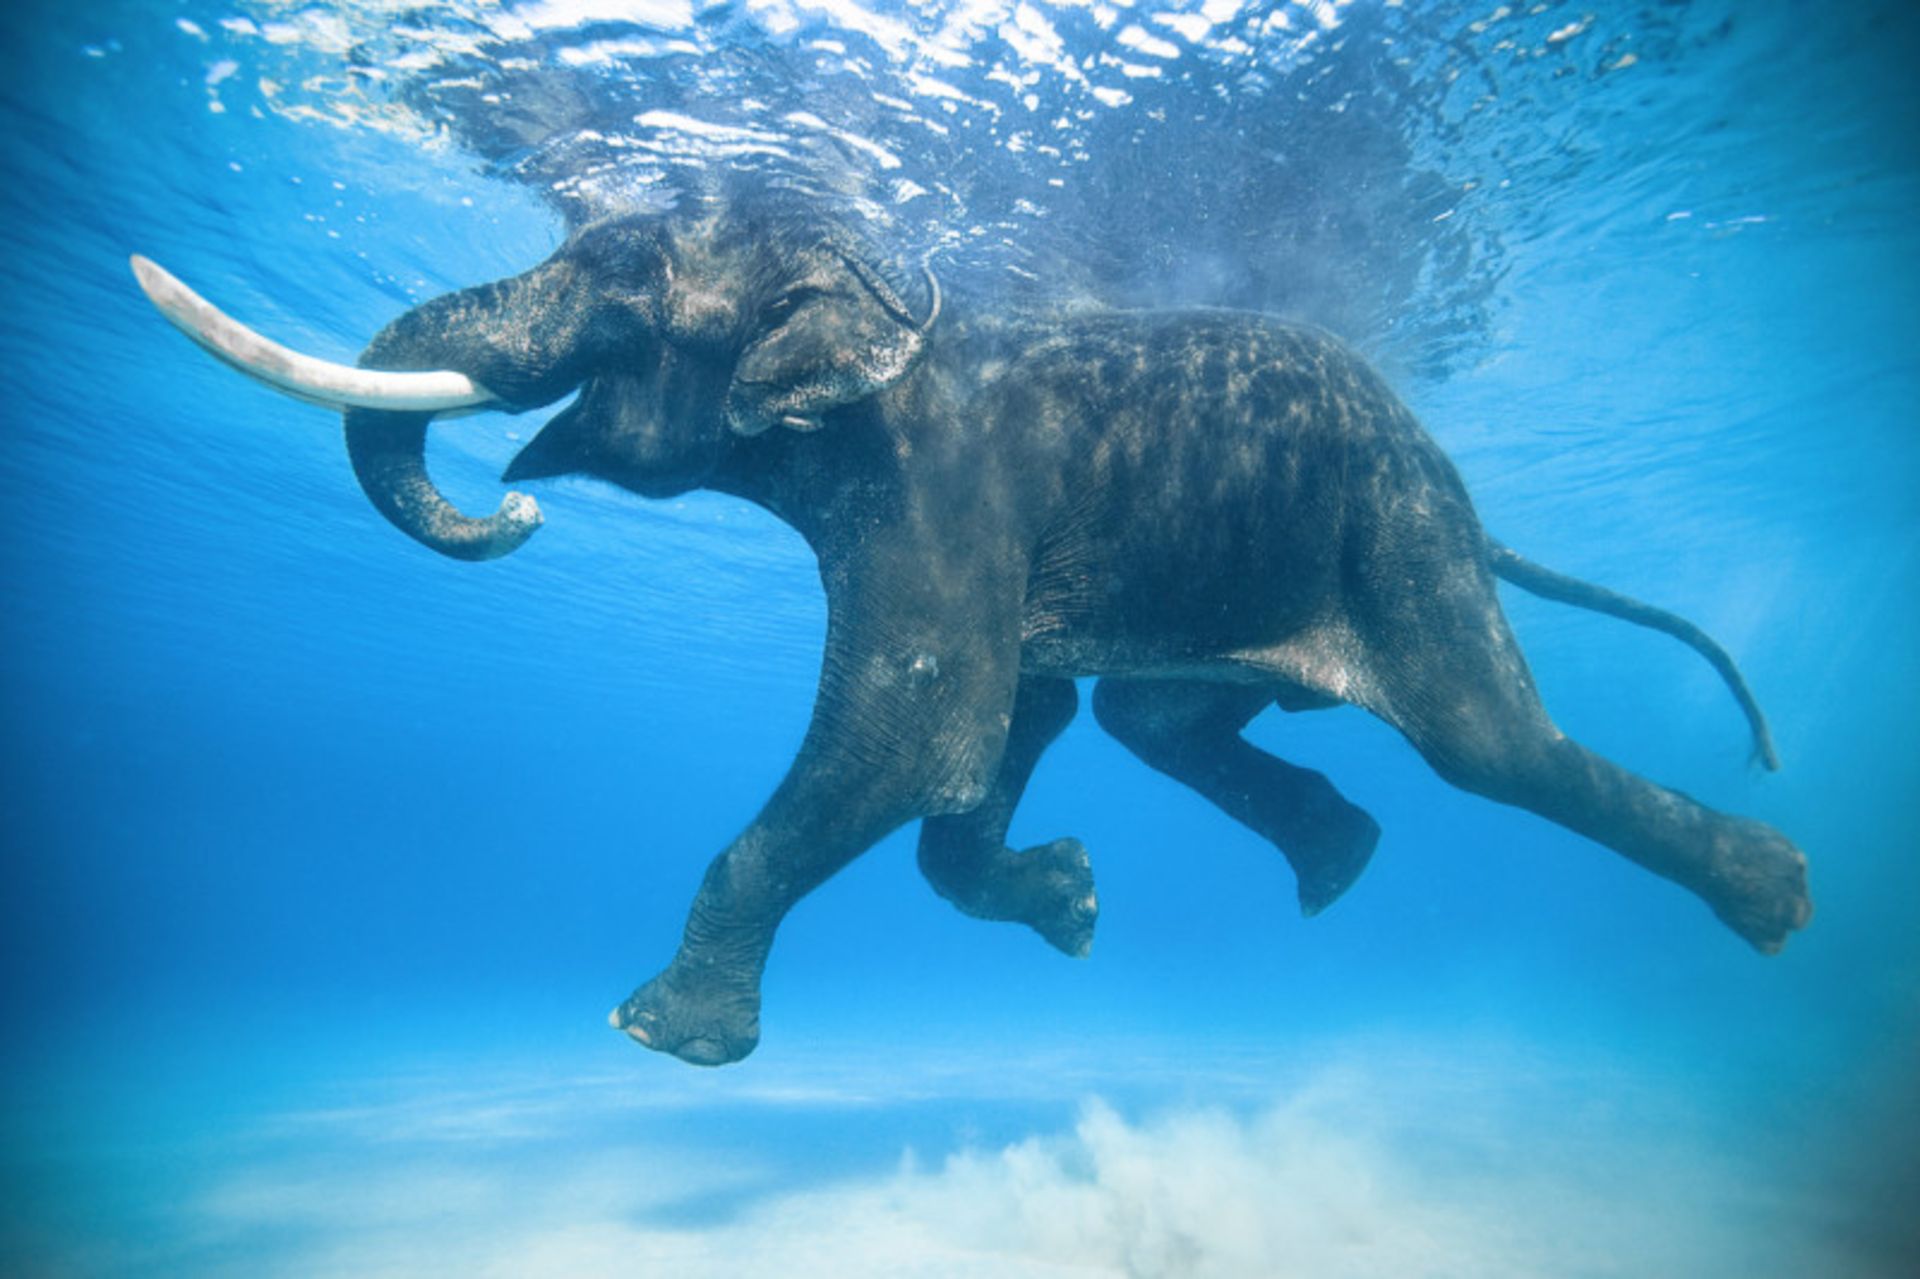  فیل آسیایی زیر آب